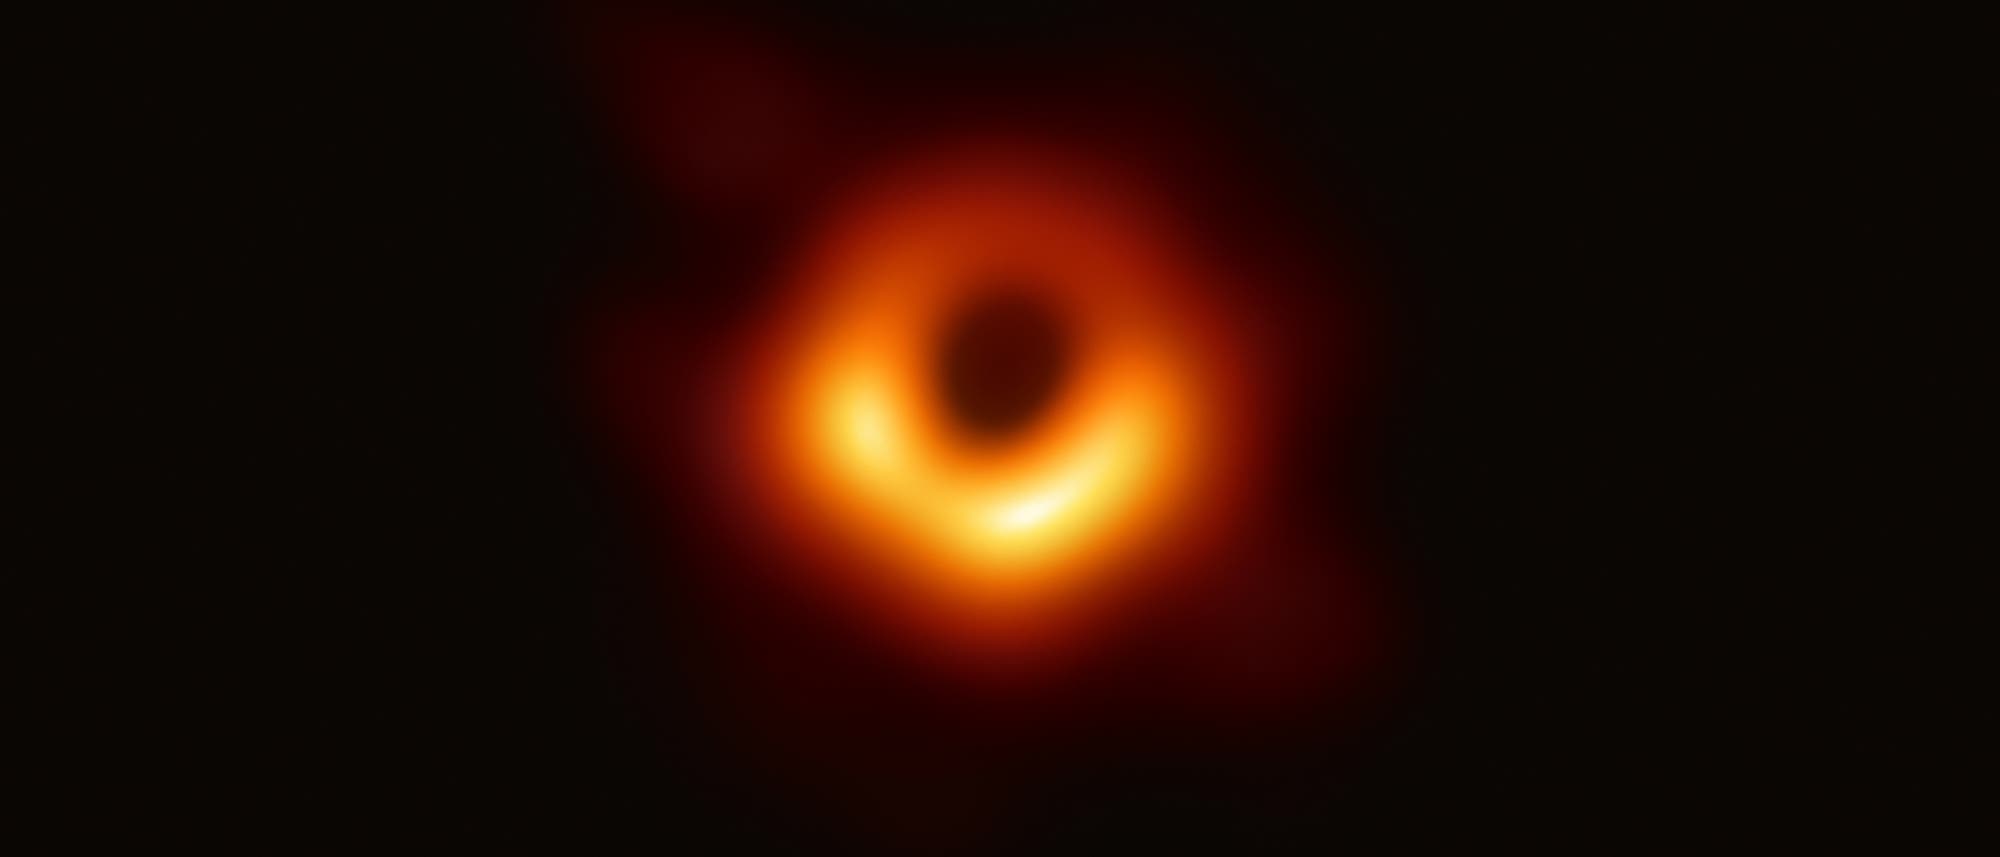 Schwarzes Loch in M87